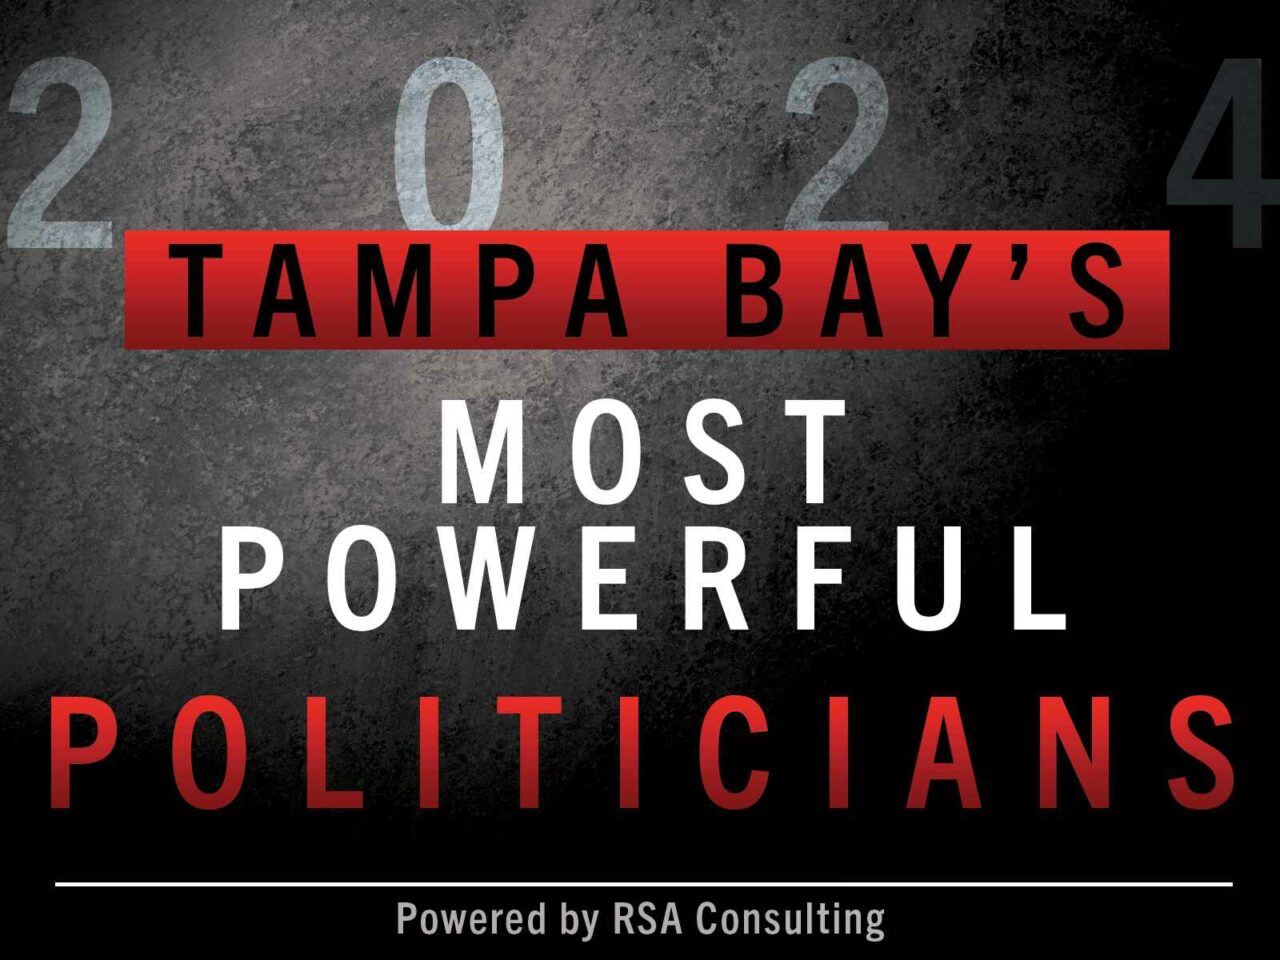 TampaBayPoliticians_0424_main